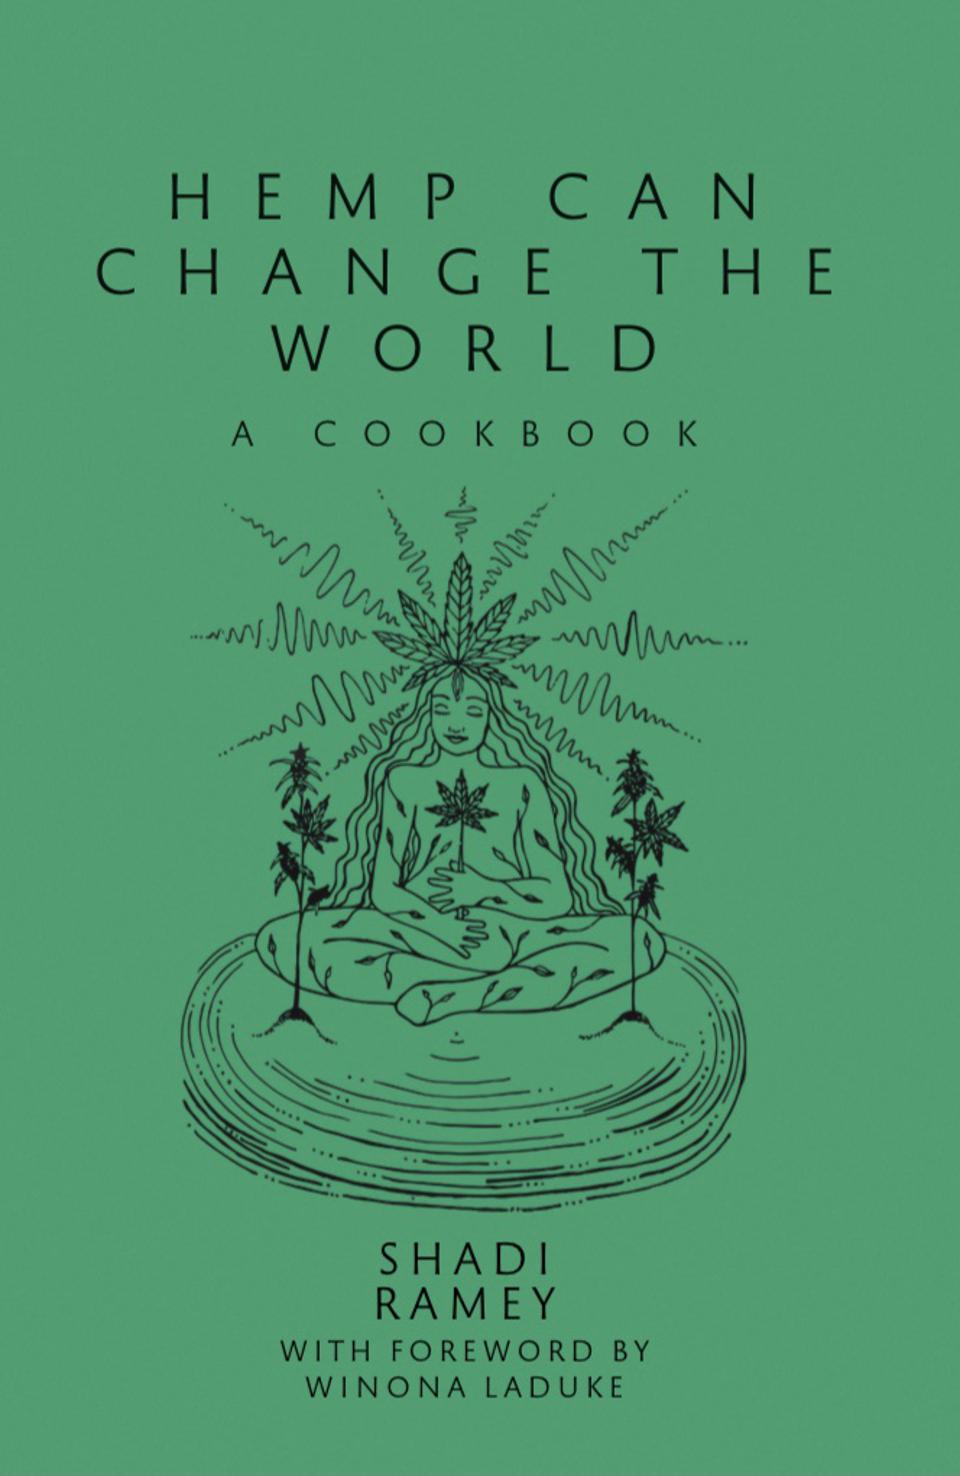 La couverture de Hemp Can Change the World, un livre de cuisine au chanvre de Shadi Ramey.